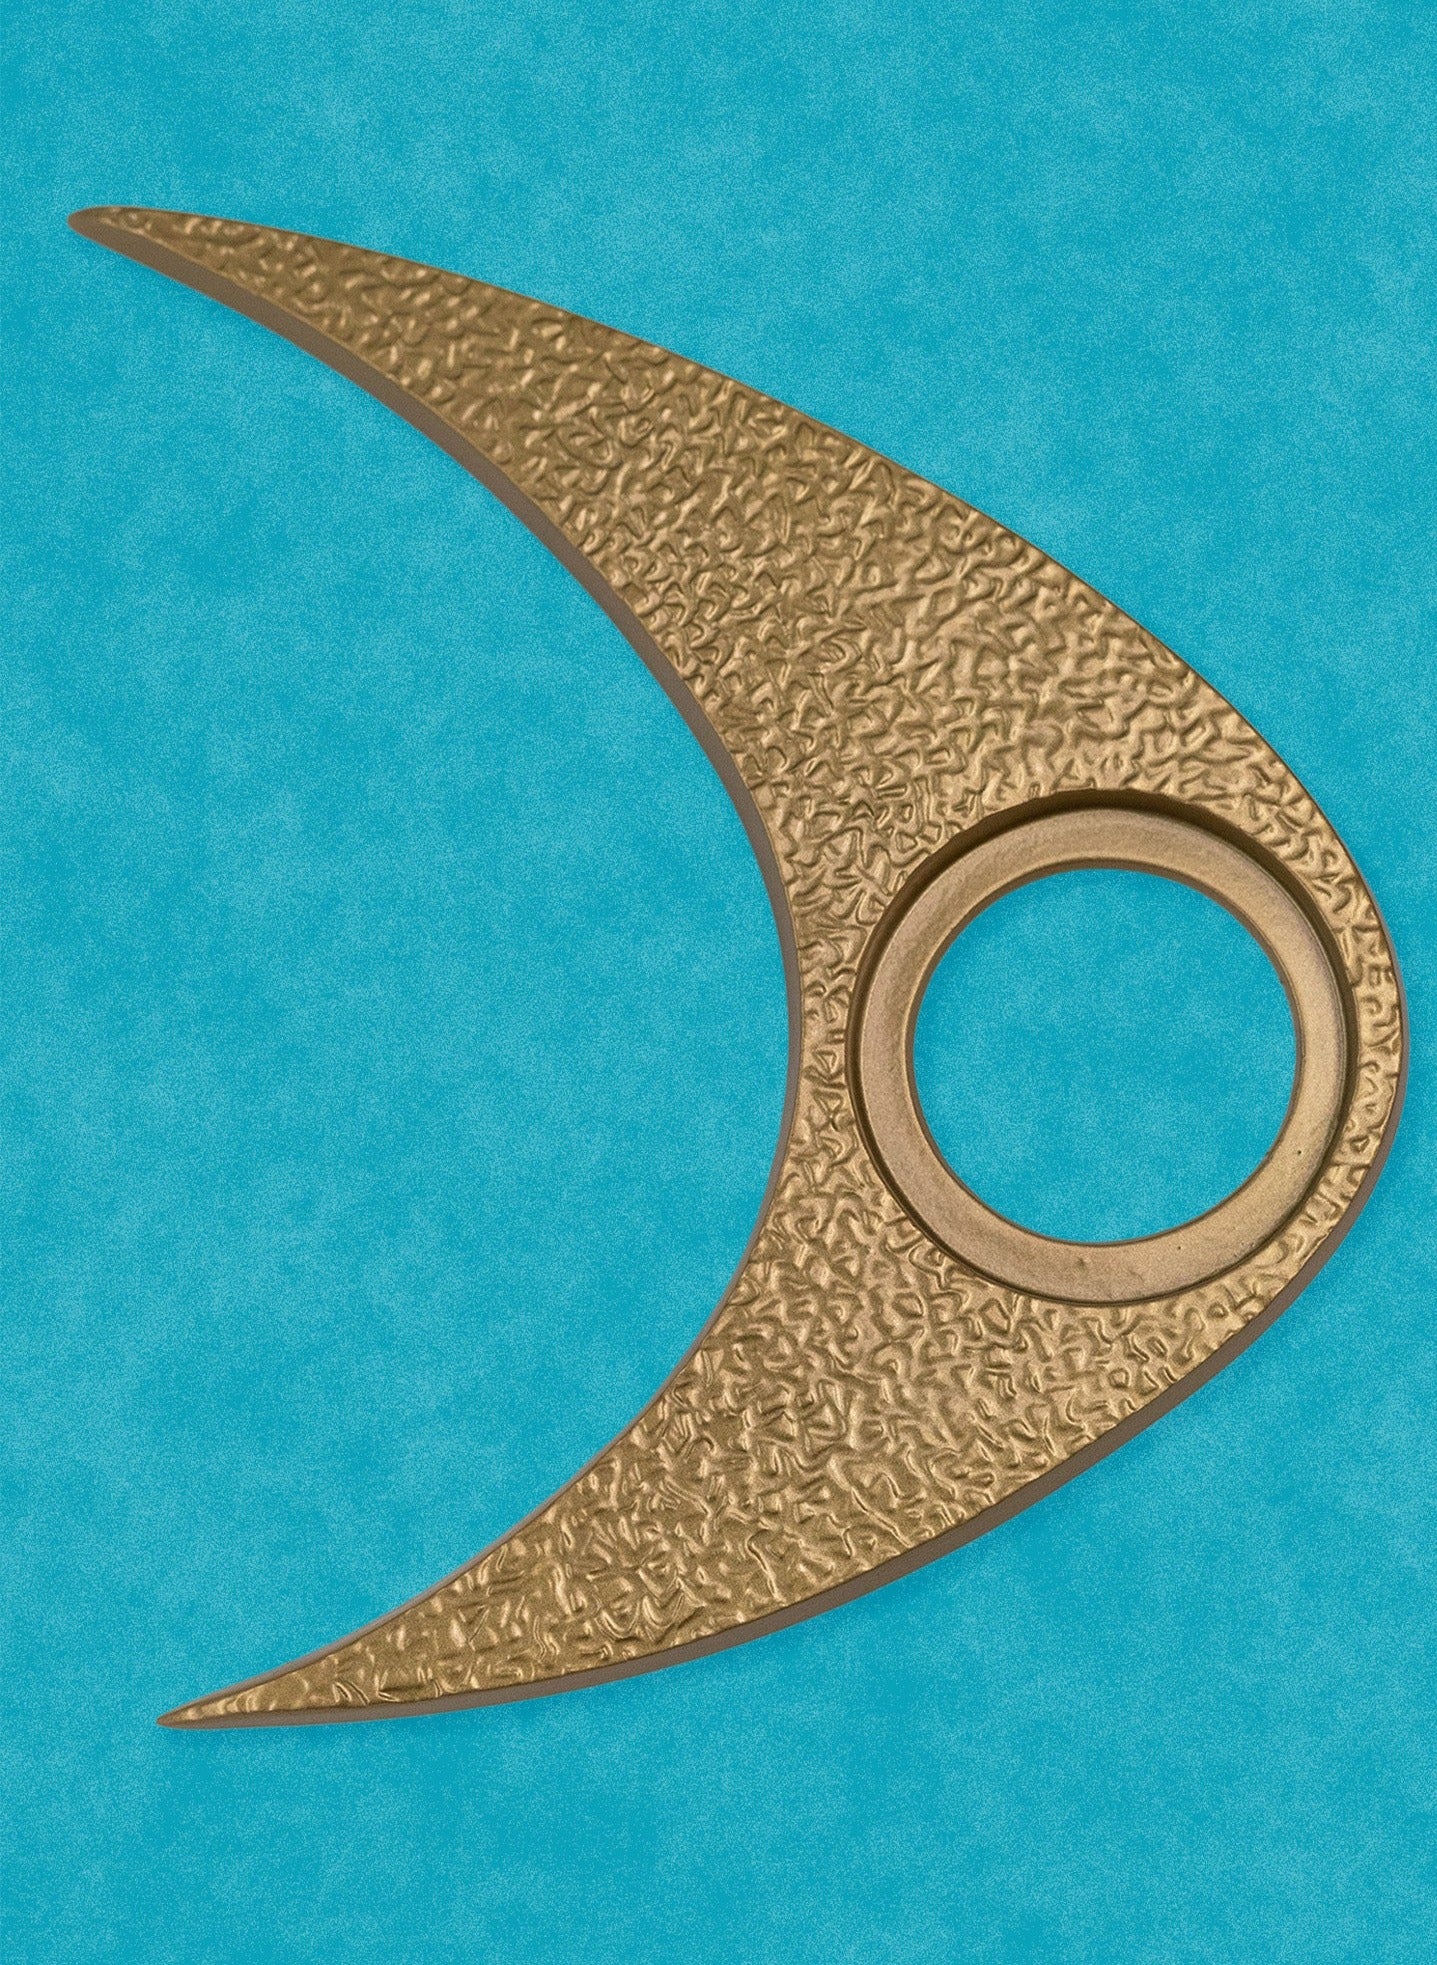 Boomerang Doorknob Escutcheon